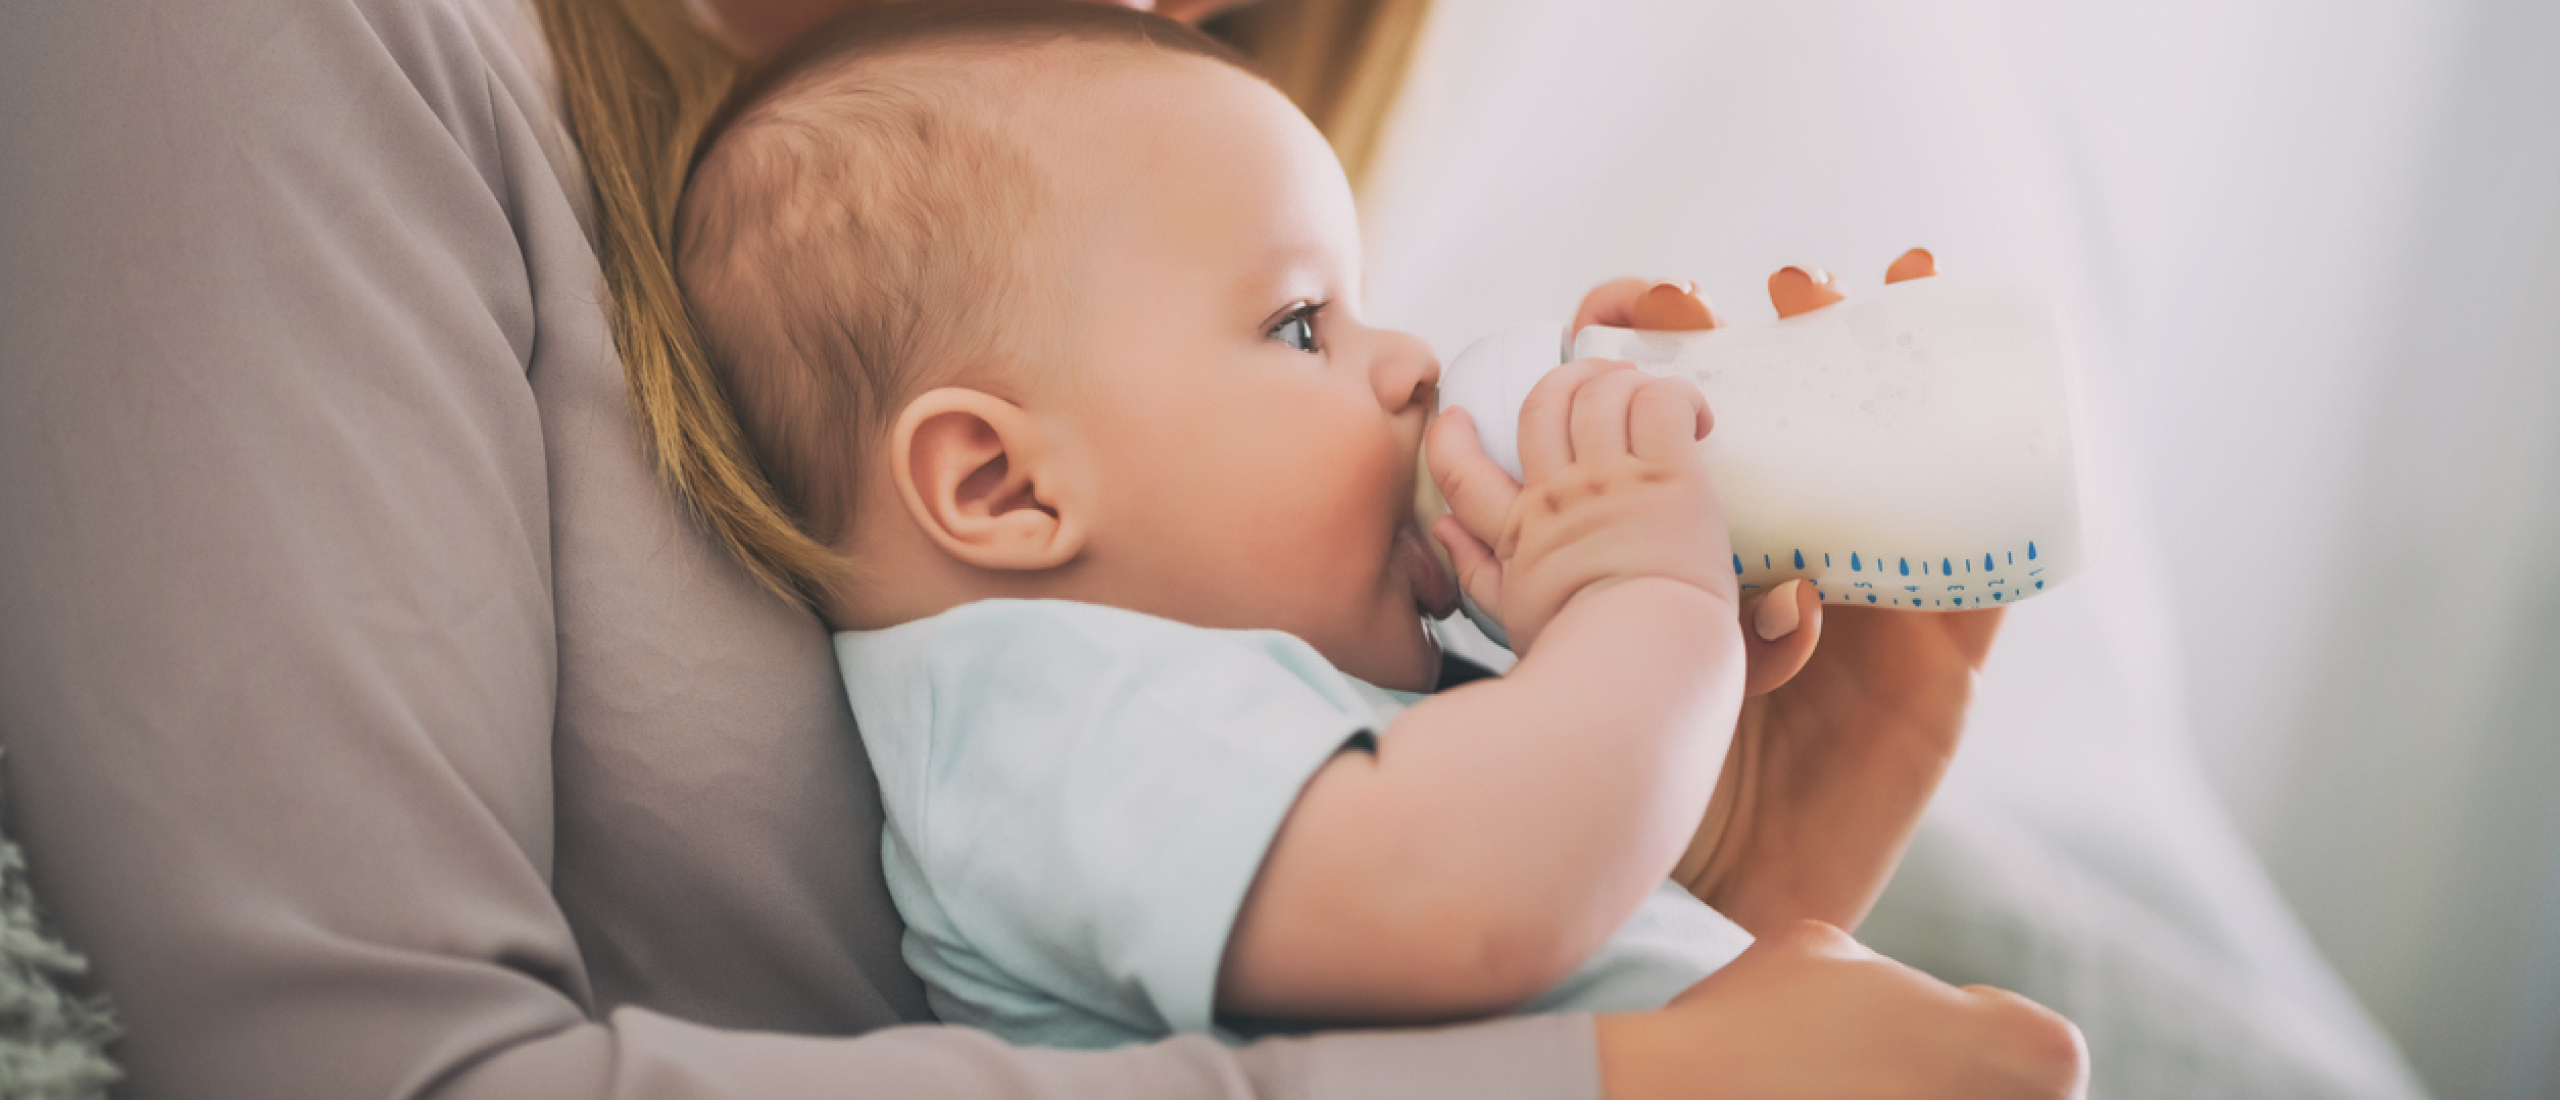 Pasgeboren baby eten en drinken